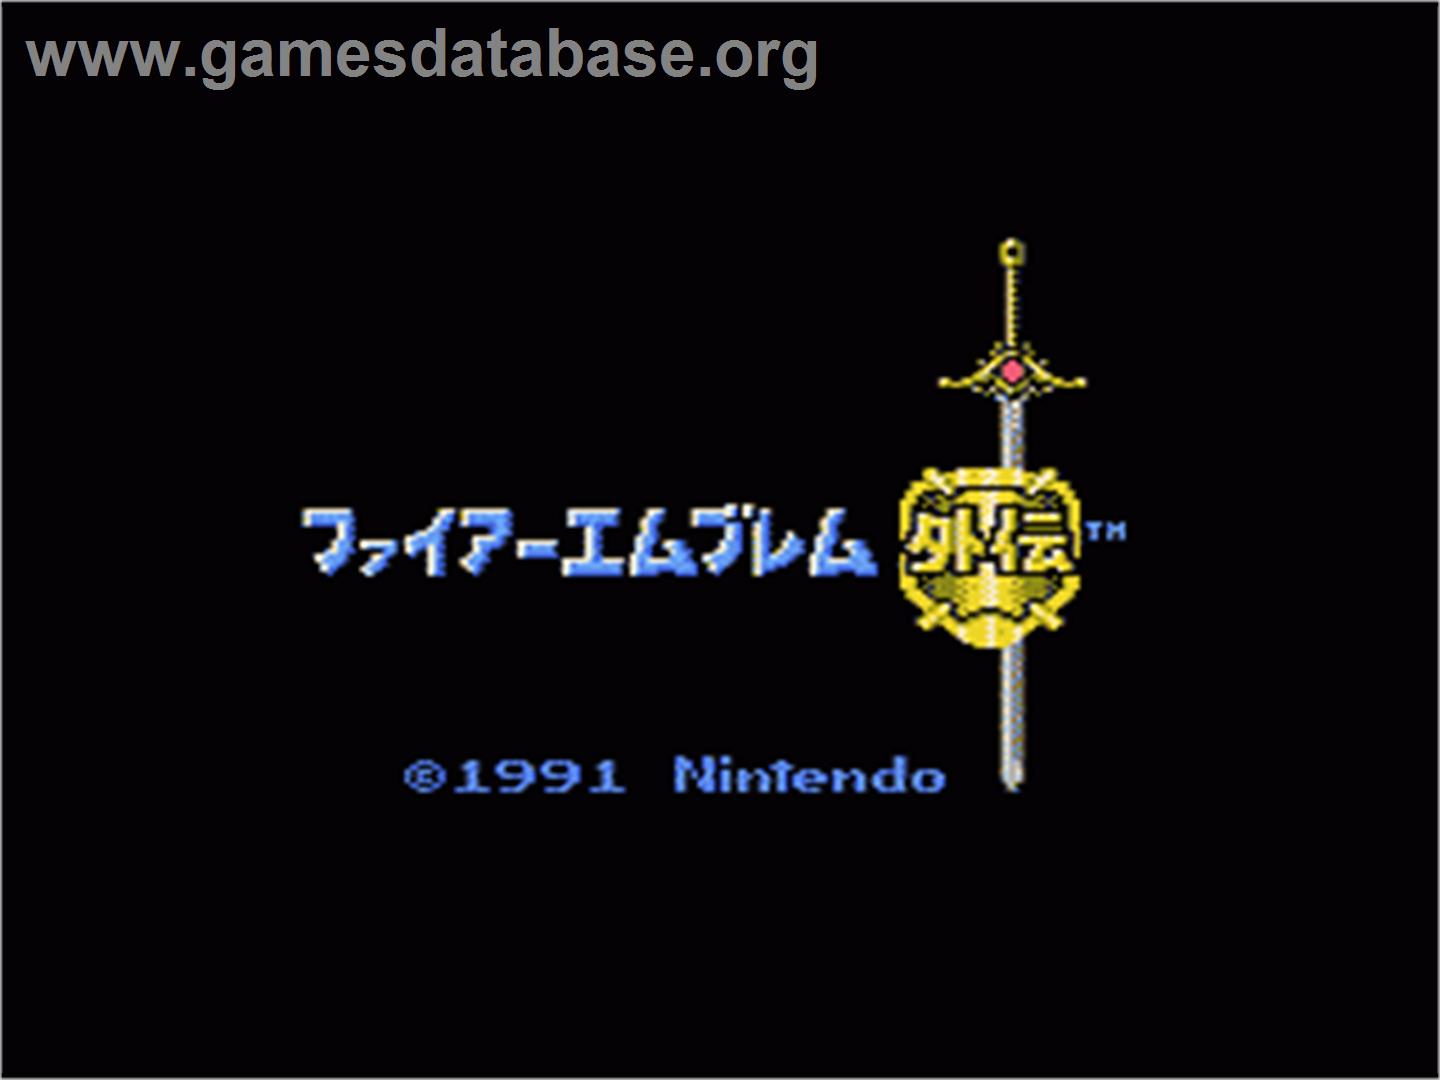 Fire Emblem Gaiden - Nintendo NES - Artwork - Title Screen